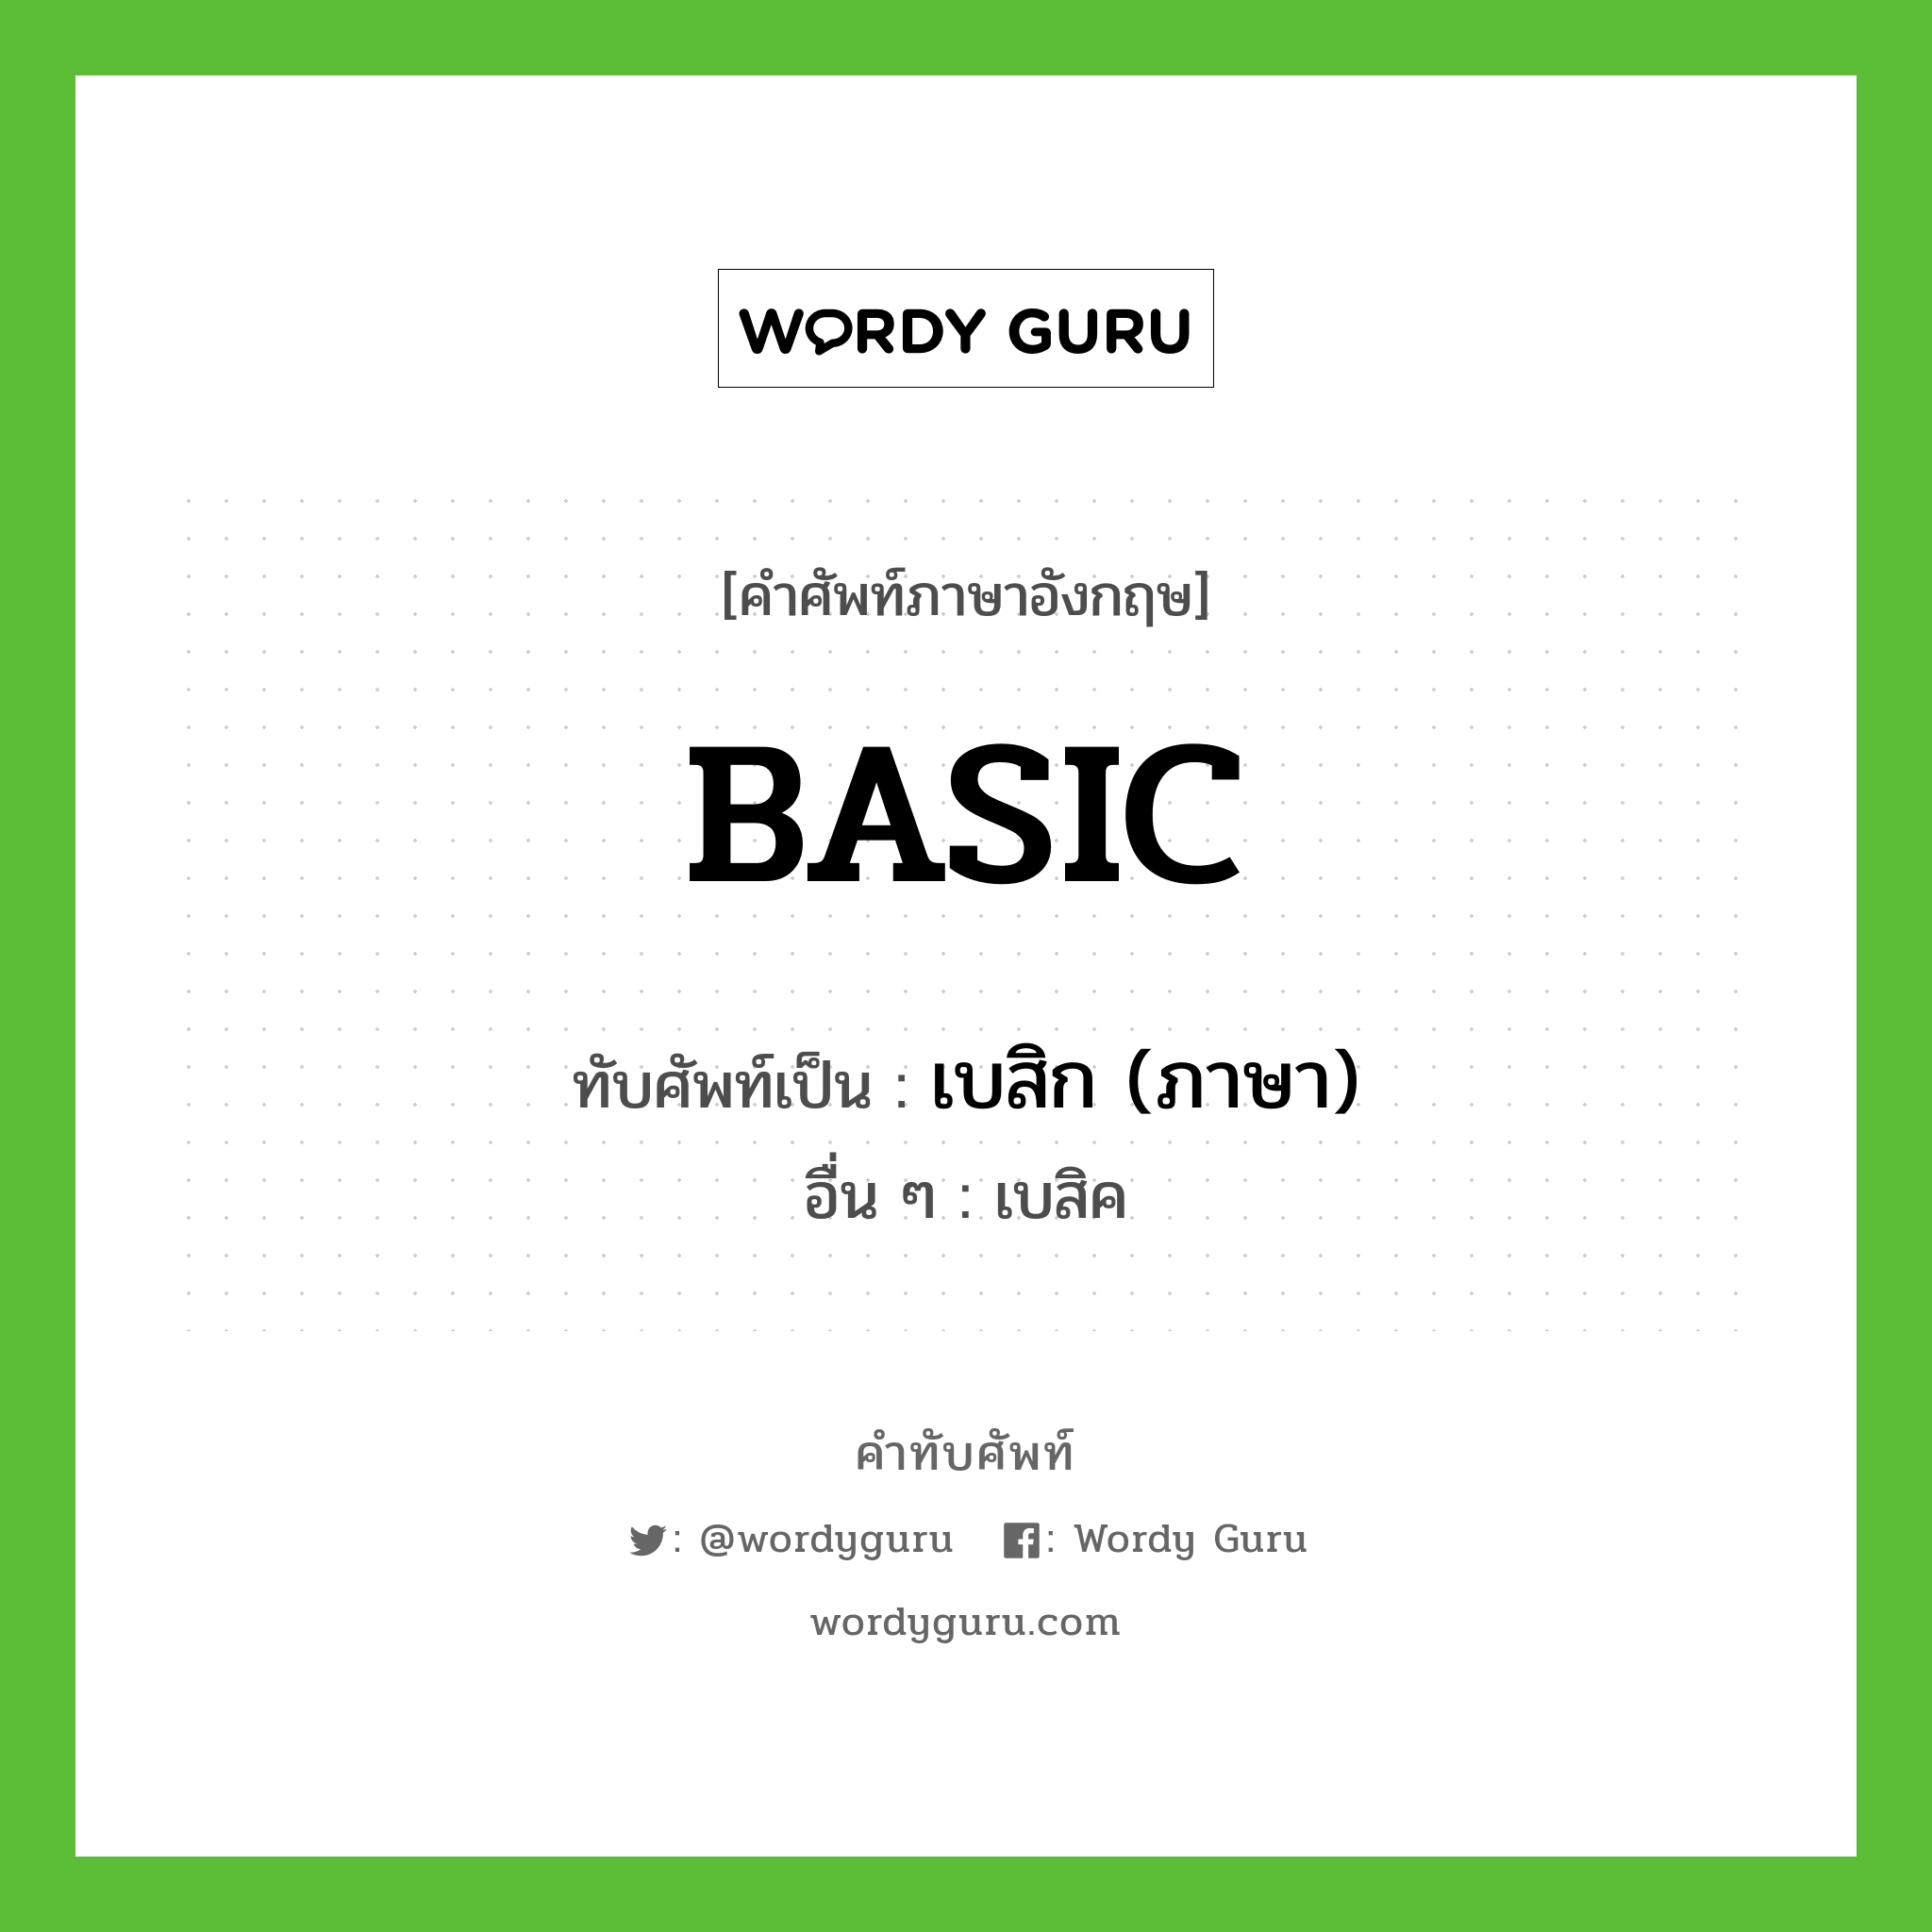 BASIC เขียนเป็นคำไทยว่าอะไร?, คำศัพท์ภาษาอังกฤษ BASIC ทับศัพท์เป็น เบสิก (ภาษา) อื่น ๆ เบสิค